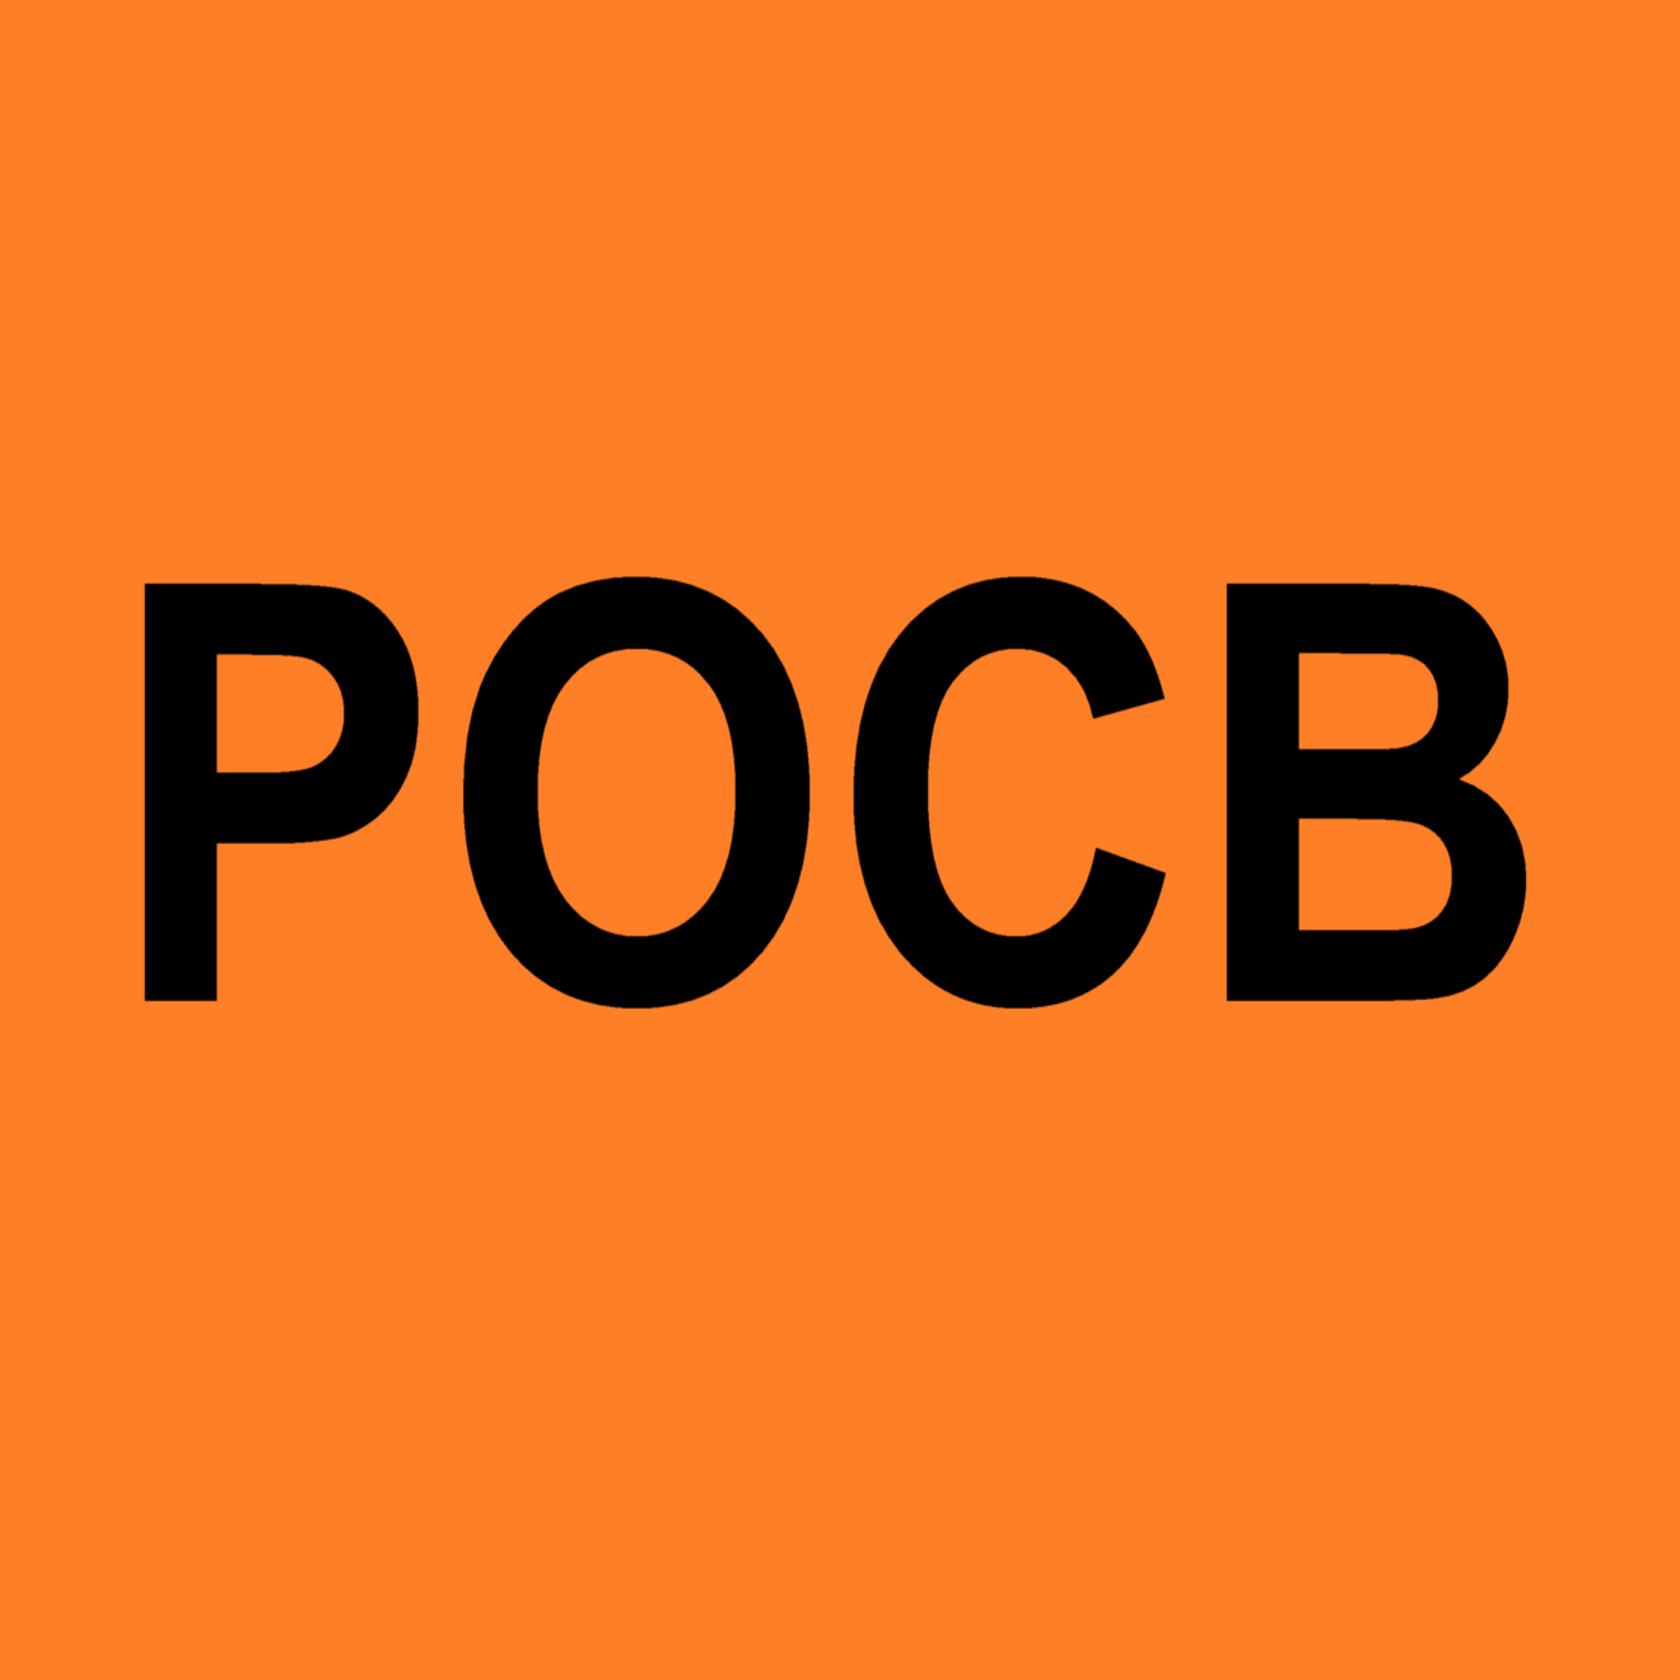 POCB logo